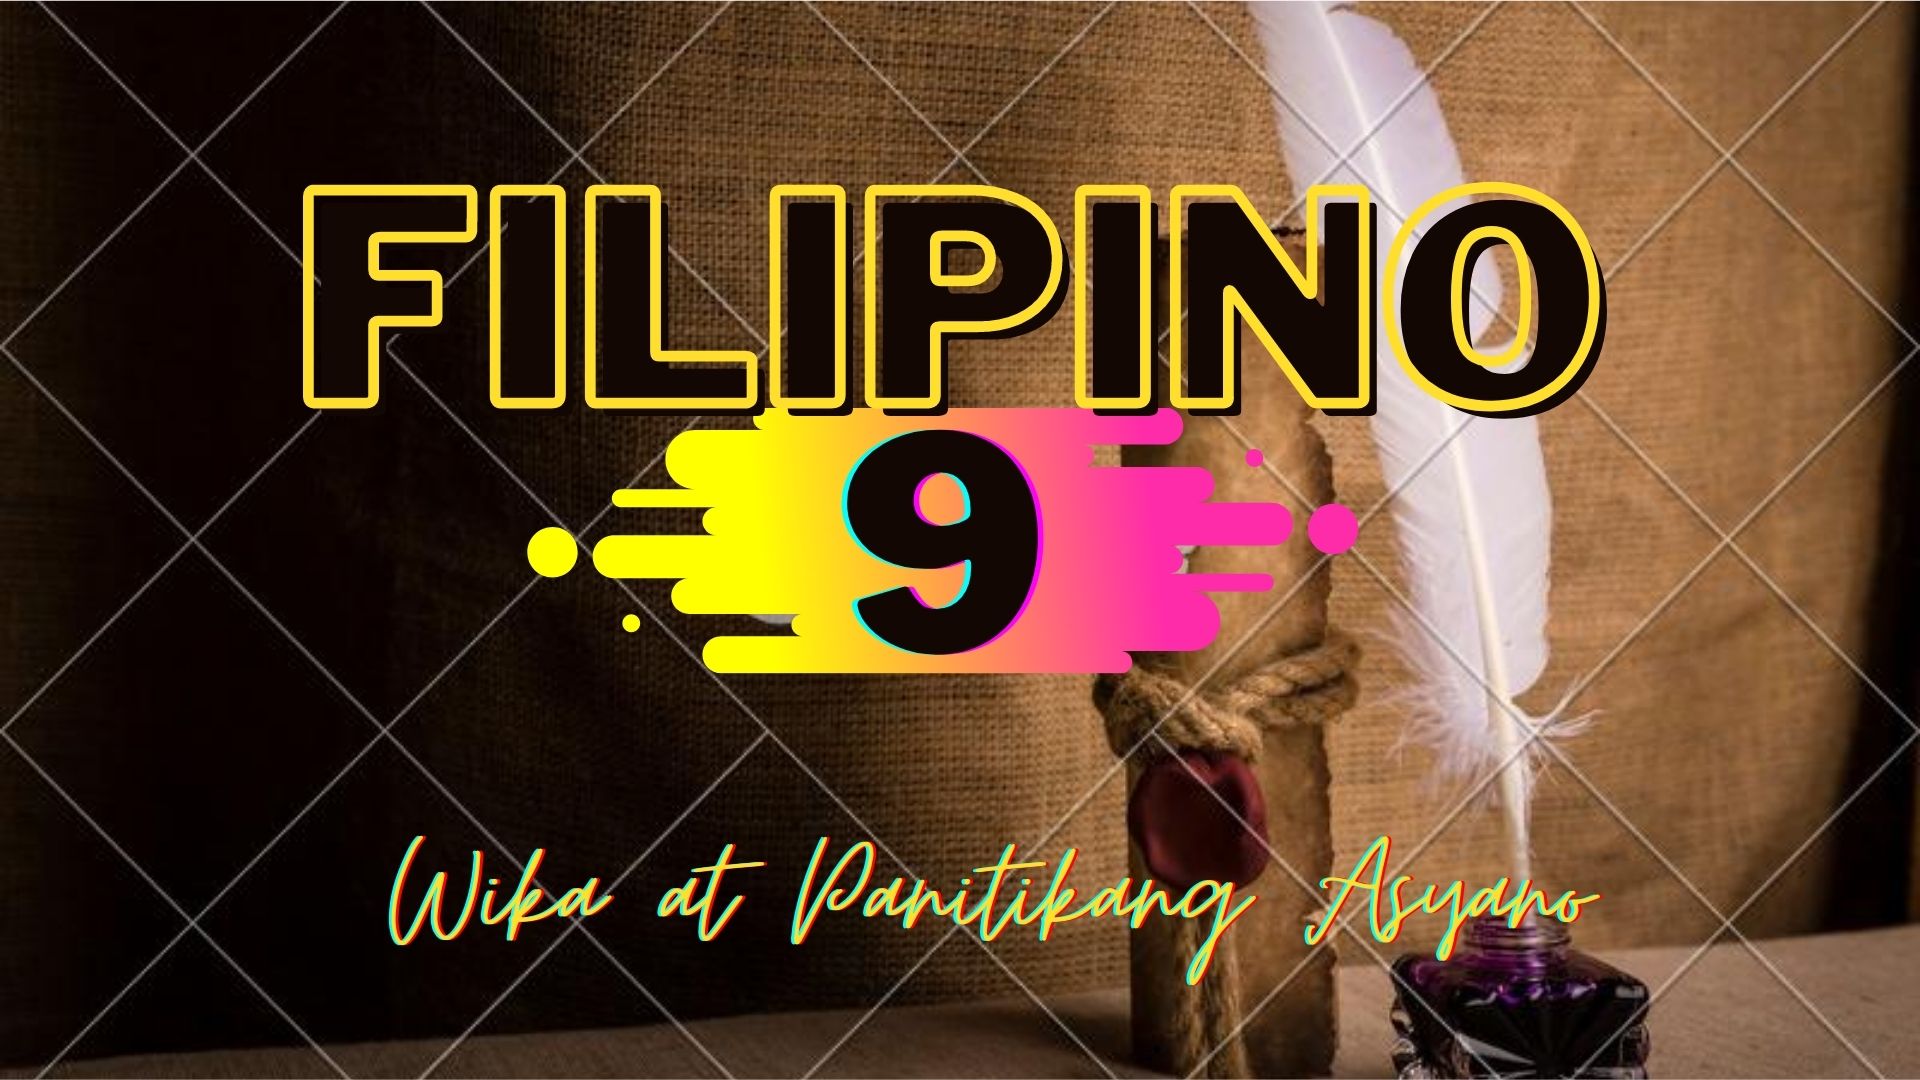 FILIPINO 9-PANITIKANG ASYANO